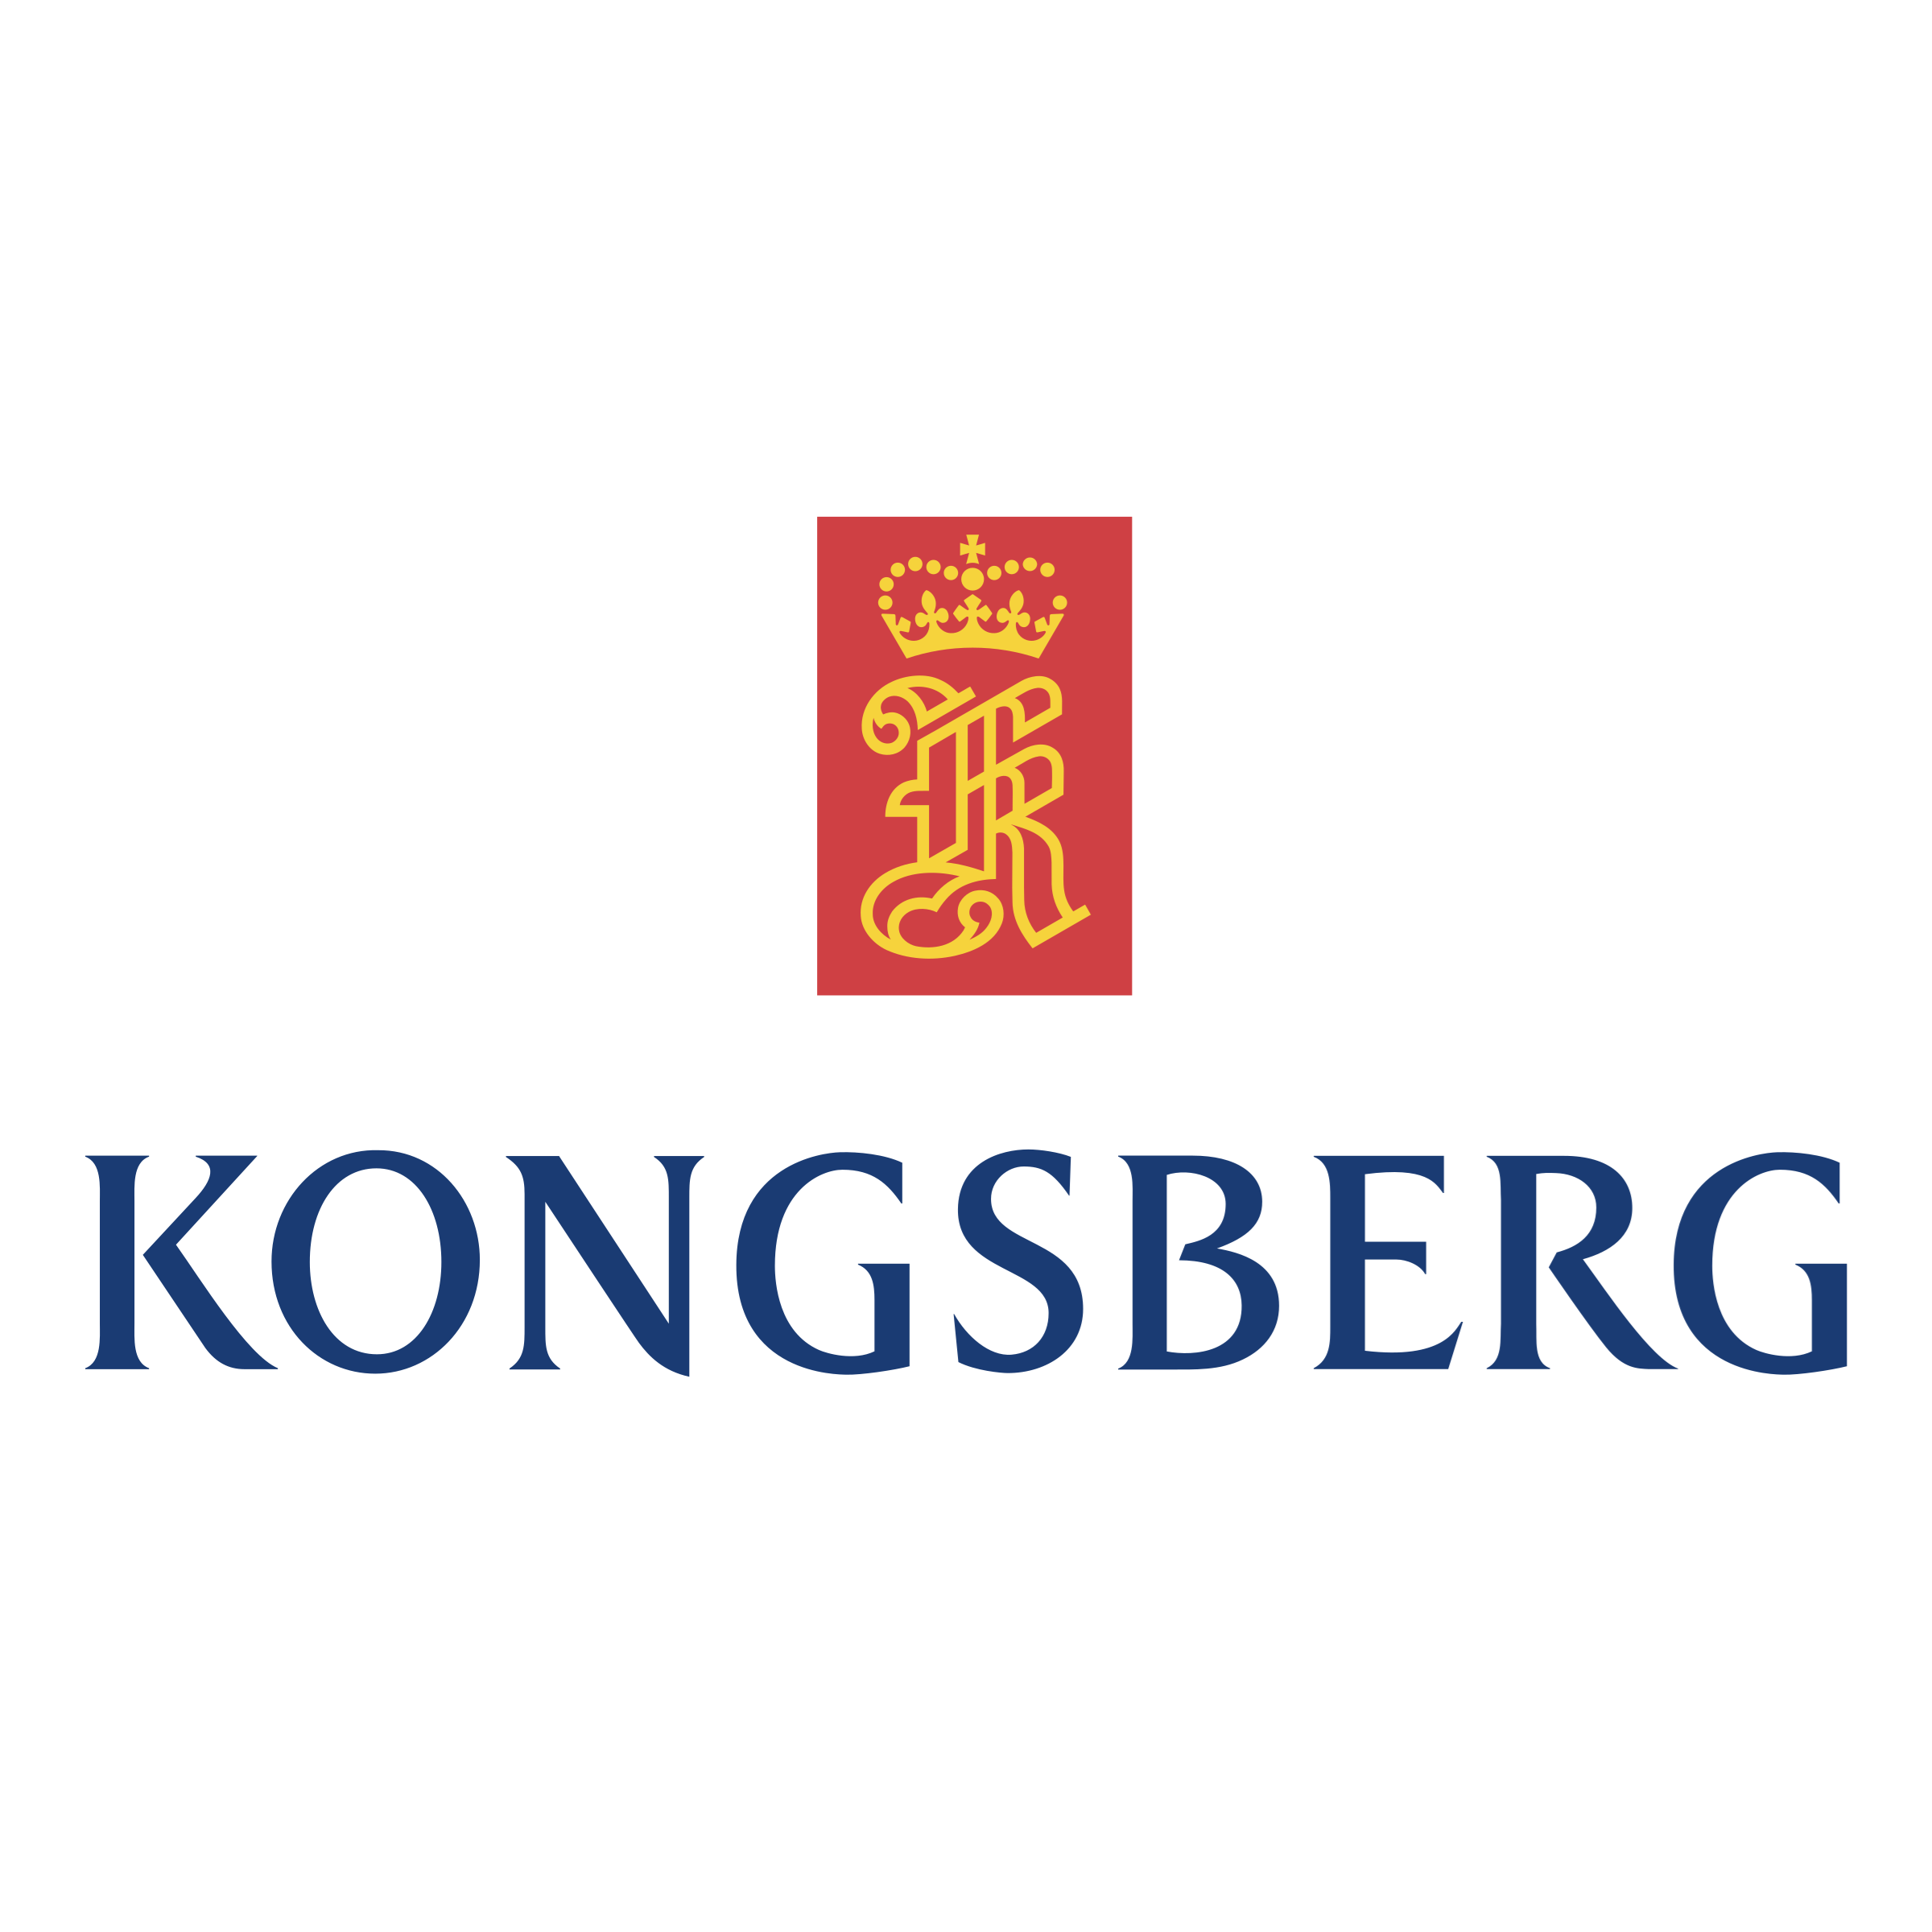 kongsberg-logo-png-transparent.png